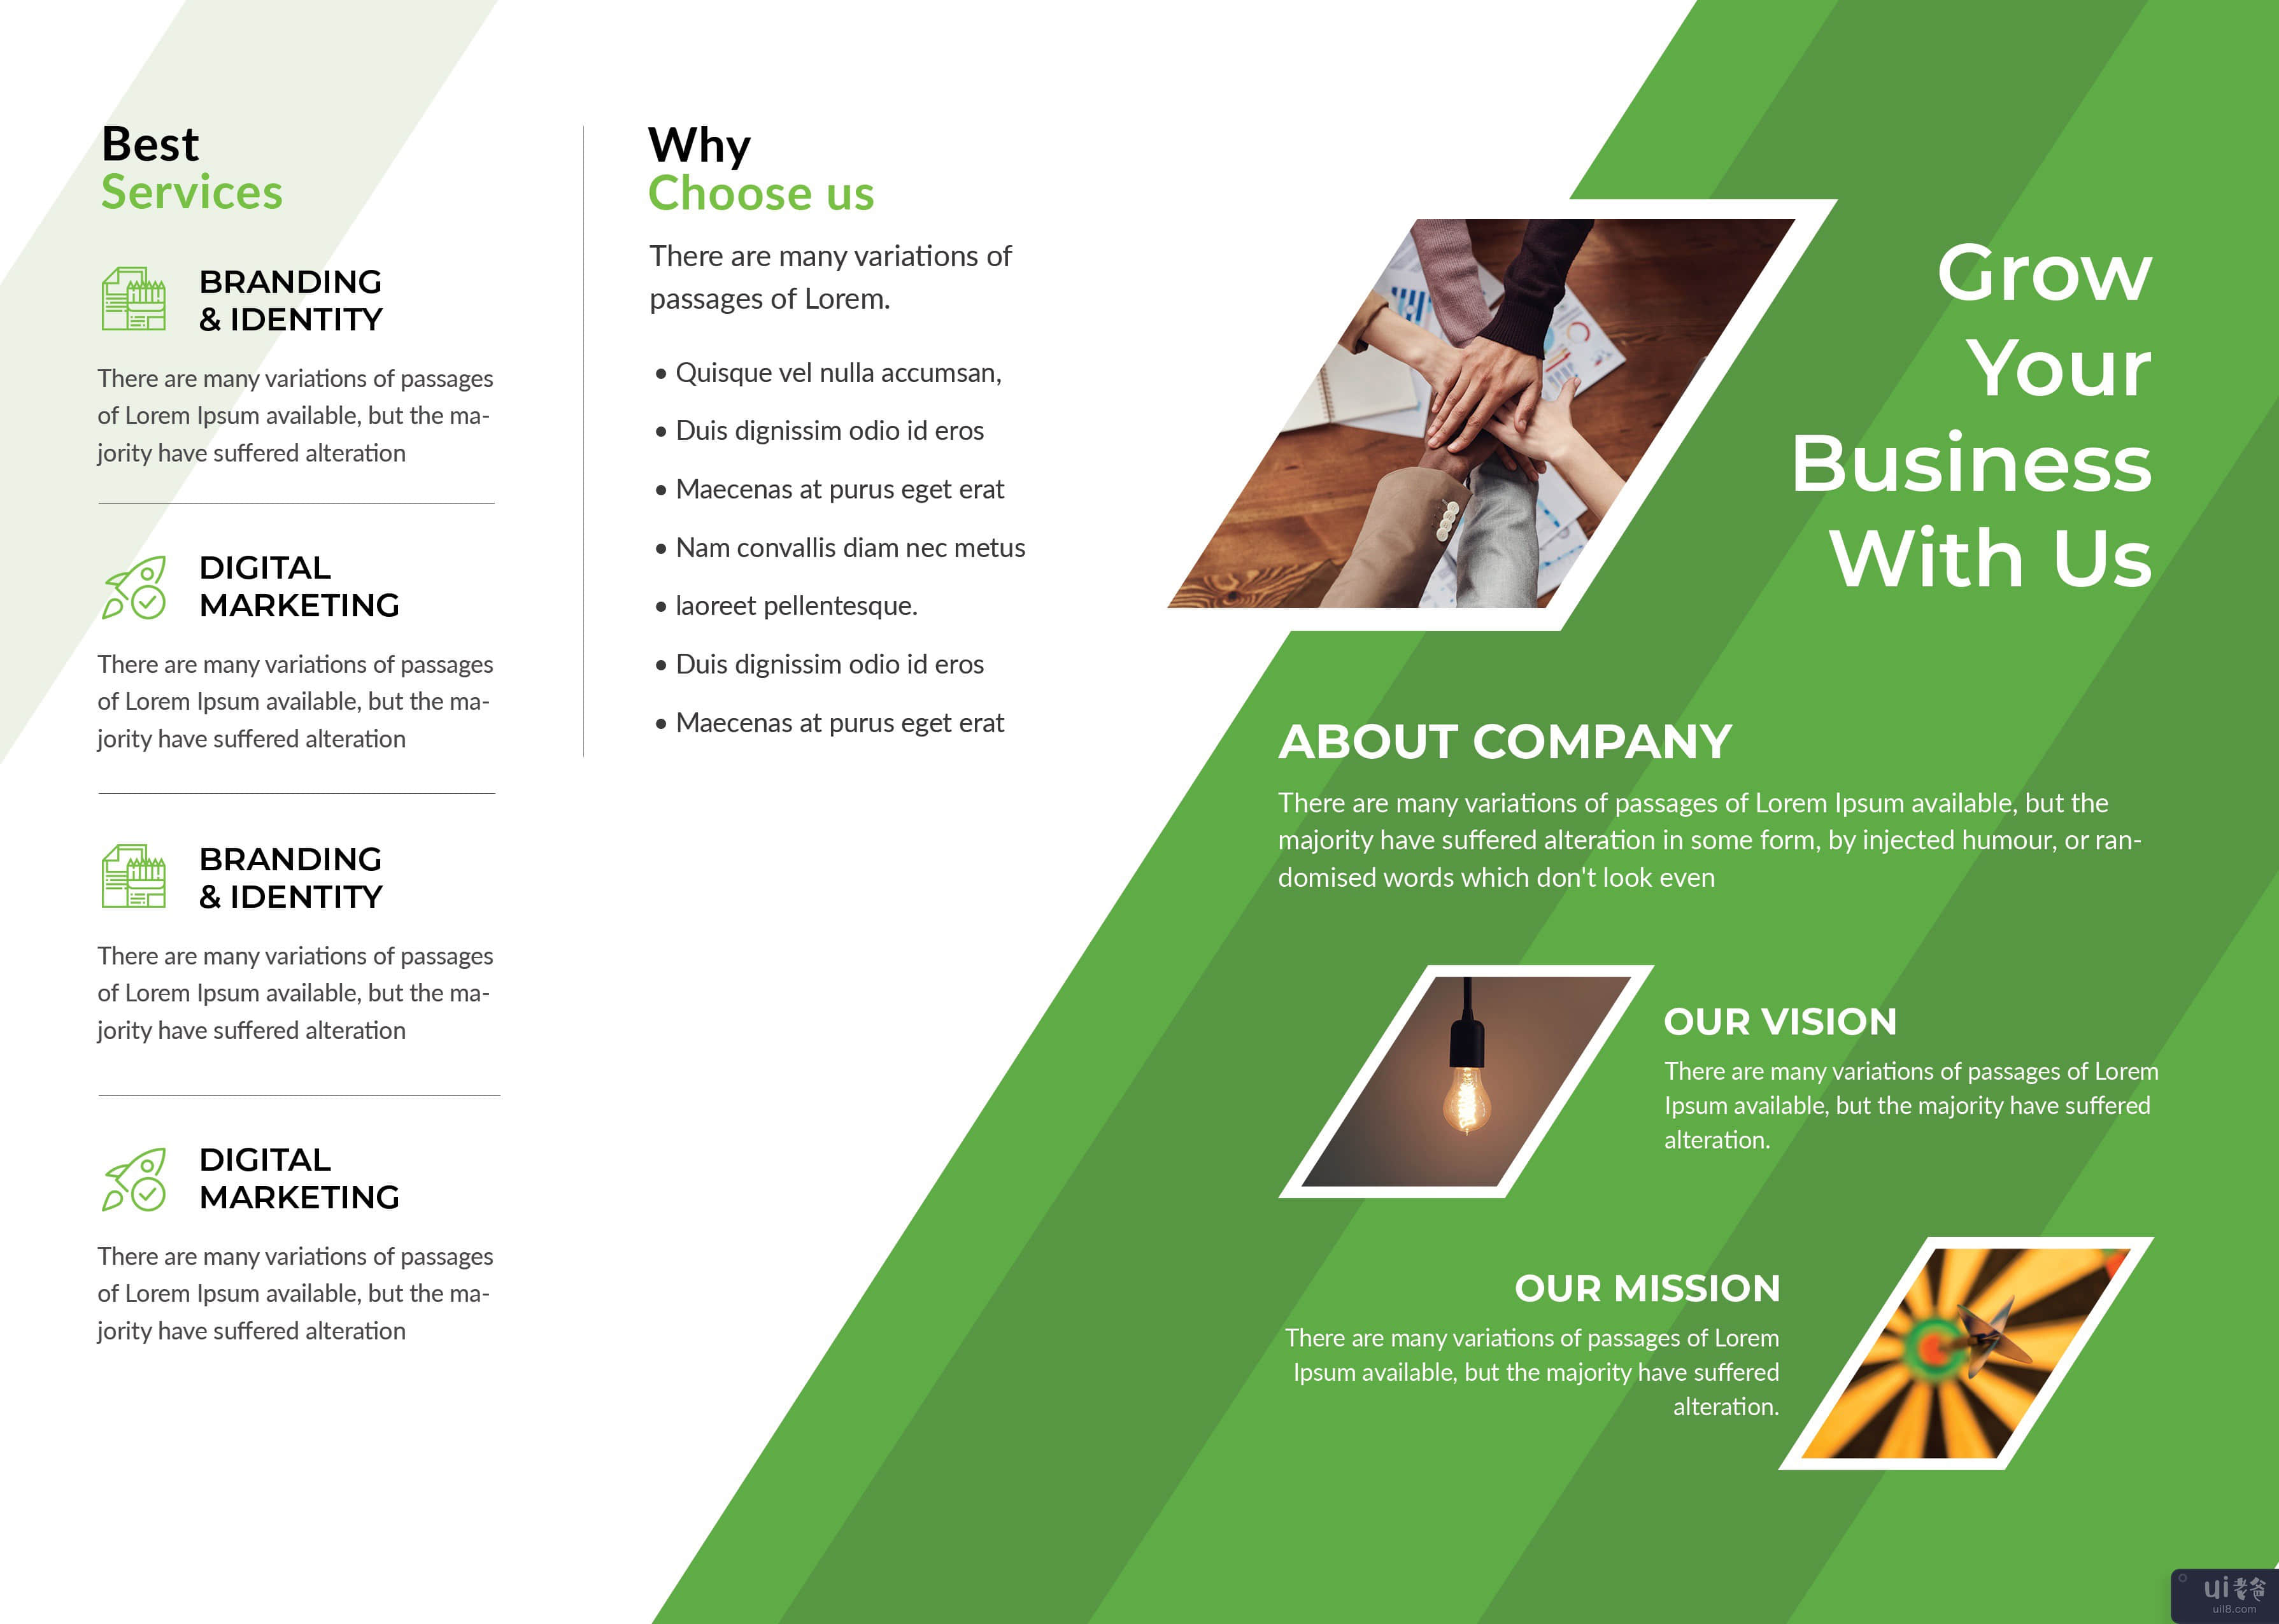 BI 折叠业务手册 7(BI Fold Business Brochure 7)插图3